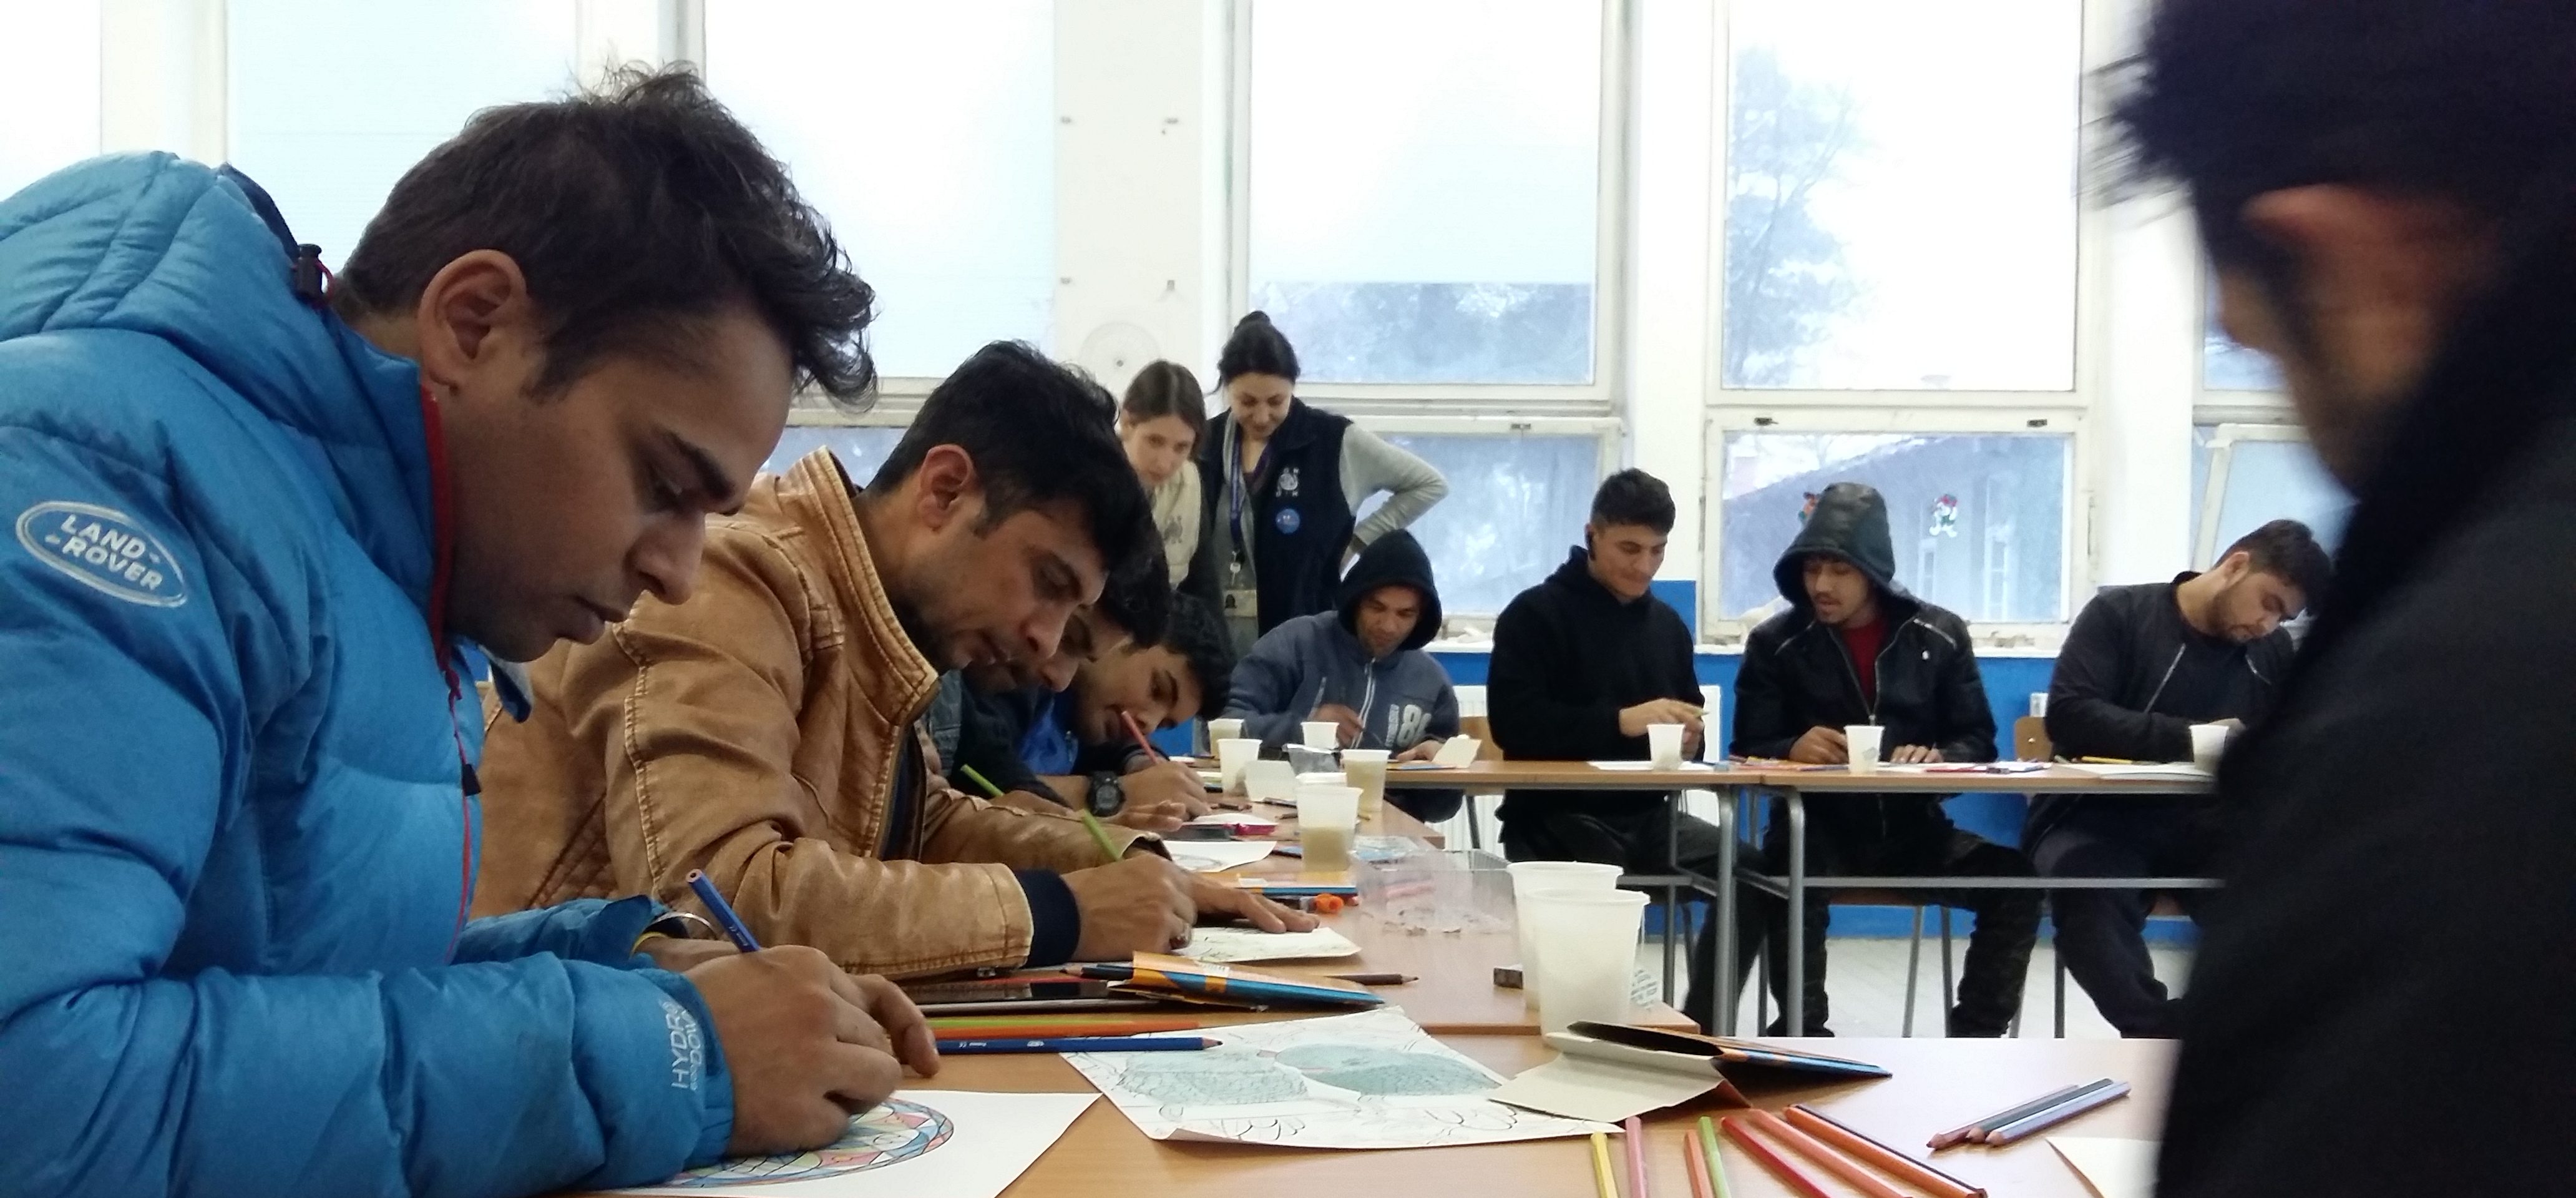 Painting workshops bringing good memories to migrants